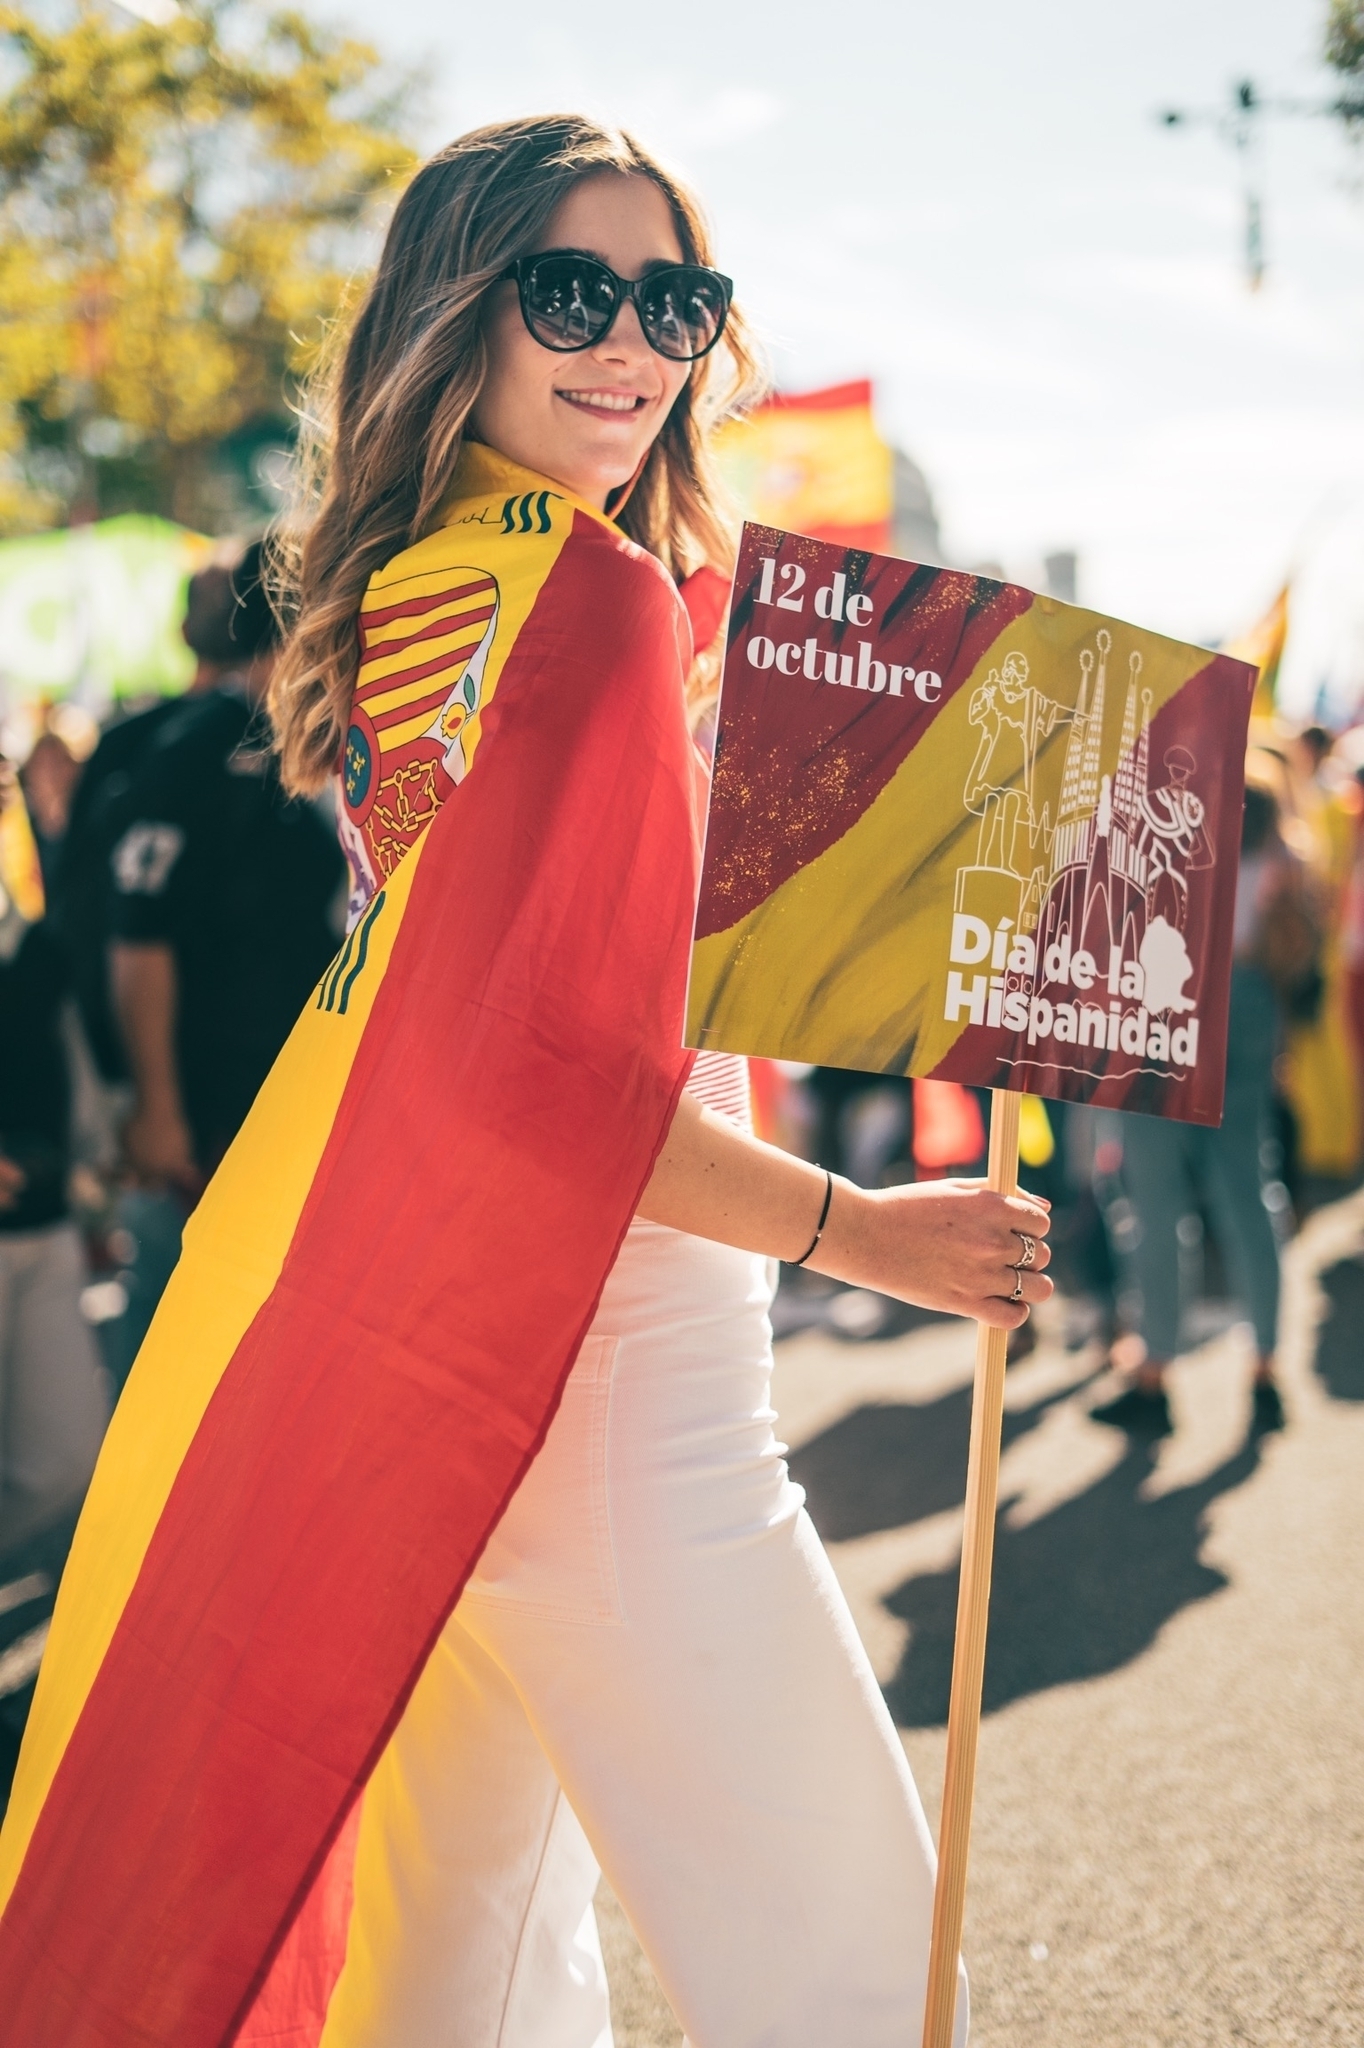 Júlia, en el desfiledel 12-O, Día de la Hispanidad. Una vez que se puso la bandera de España, ya no se la quita.